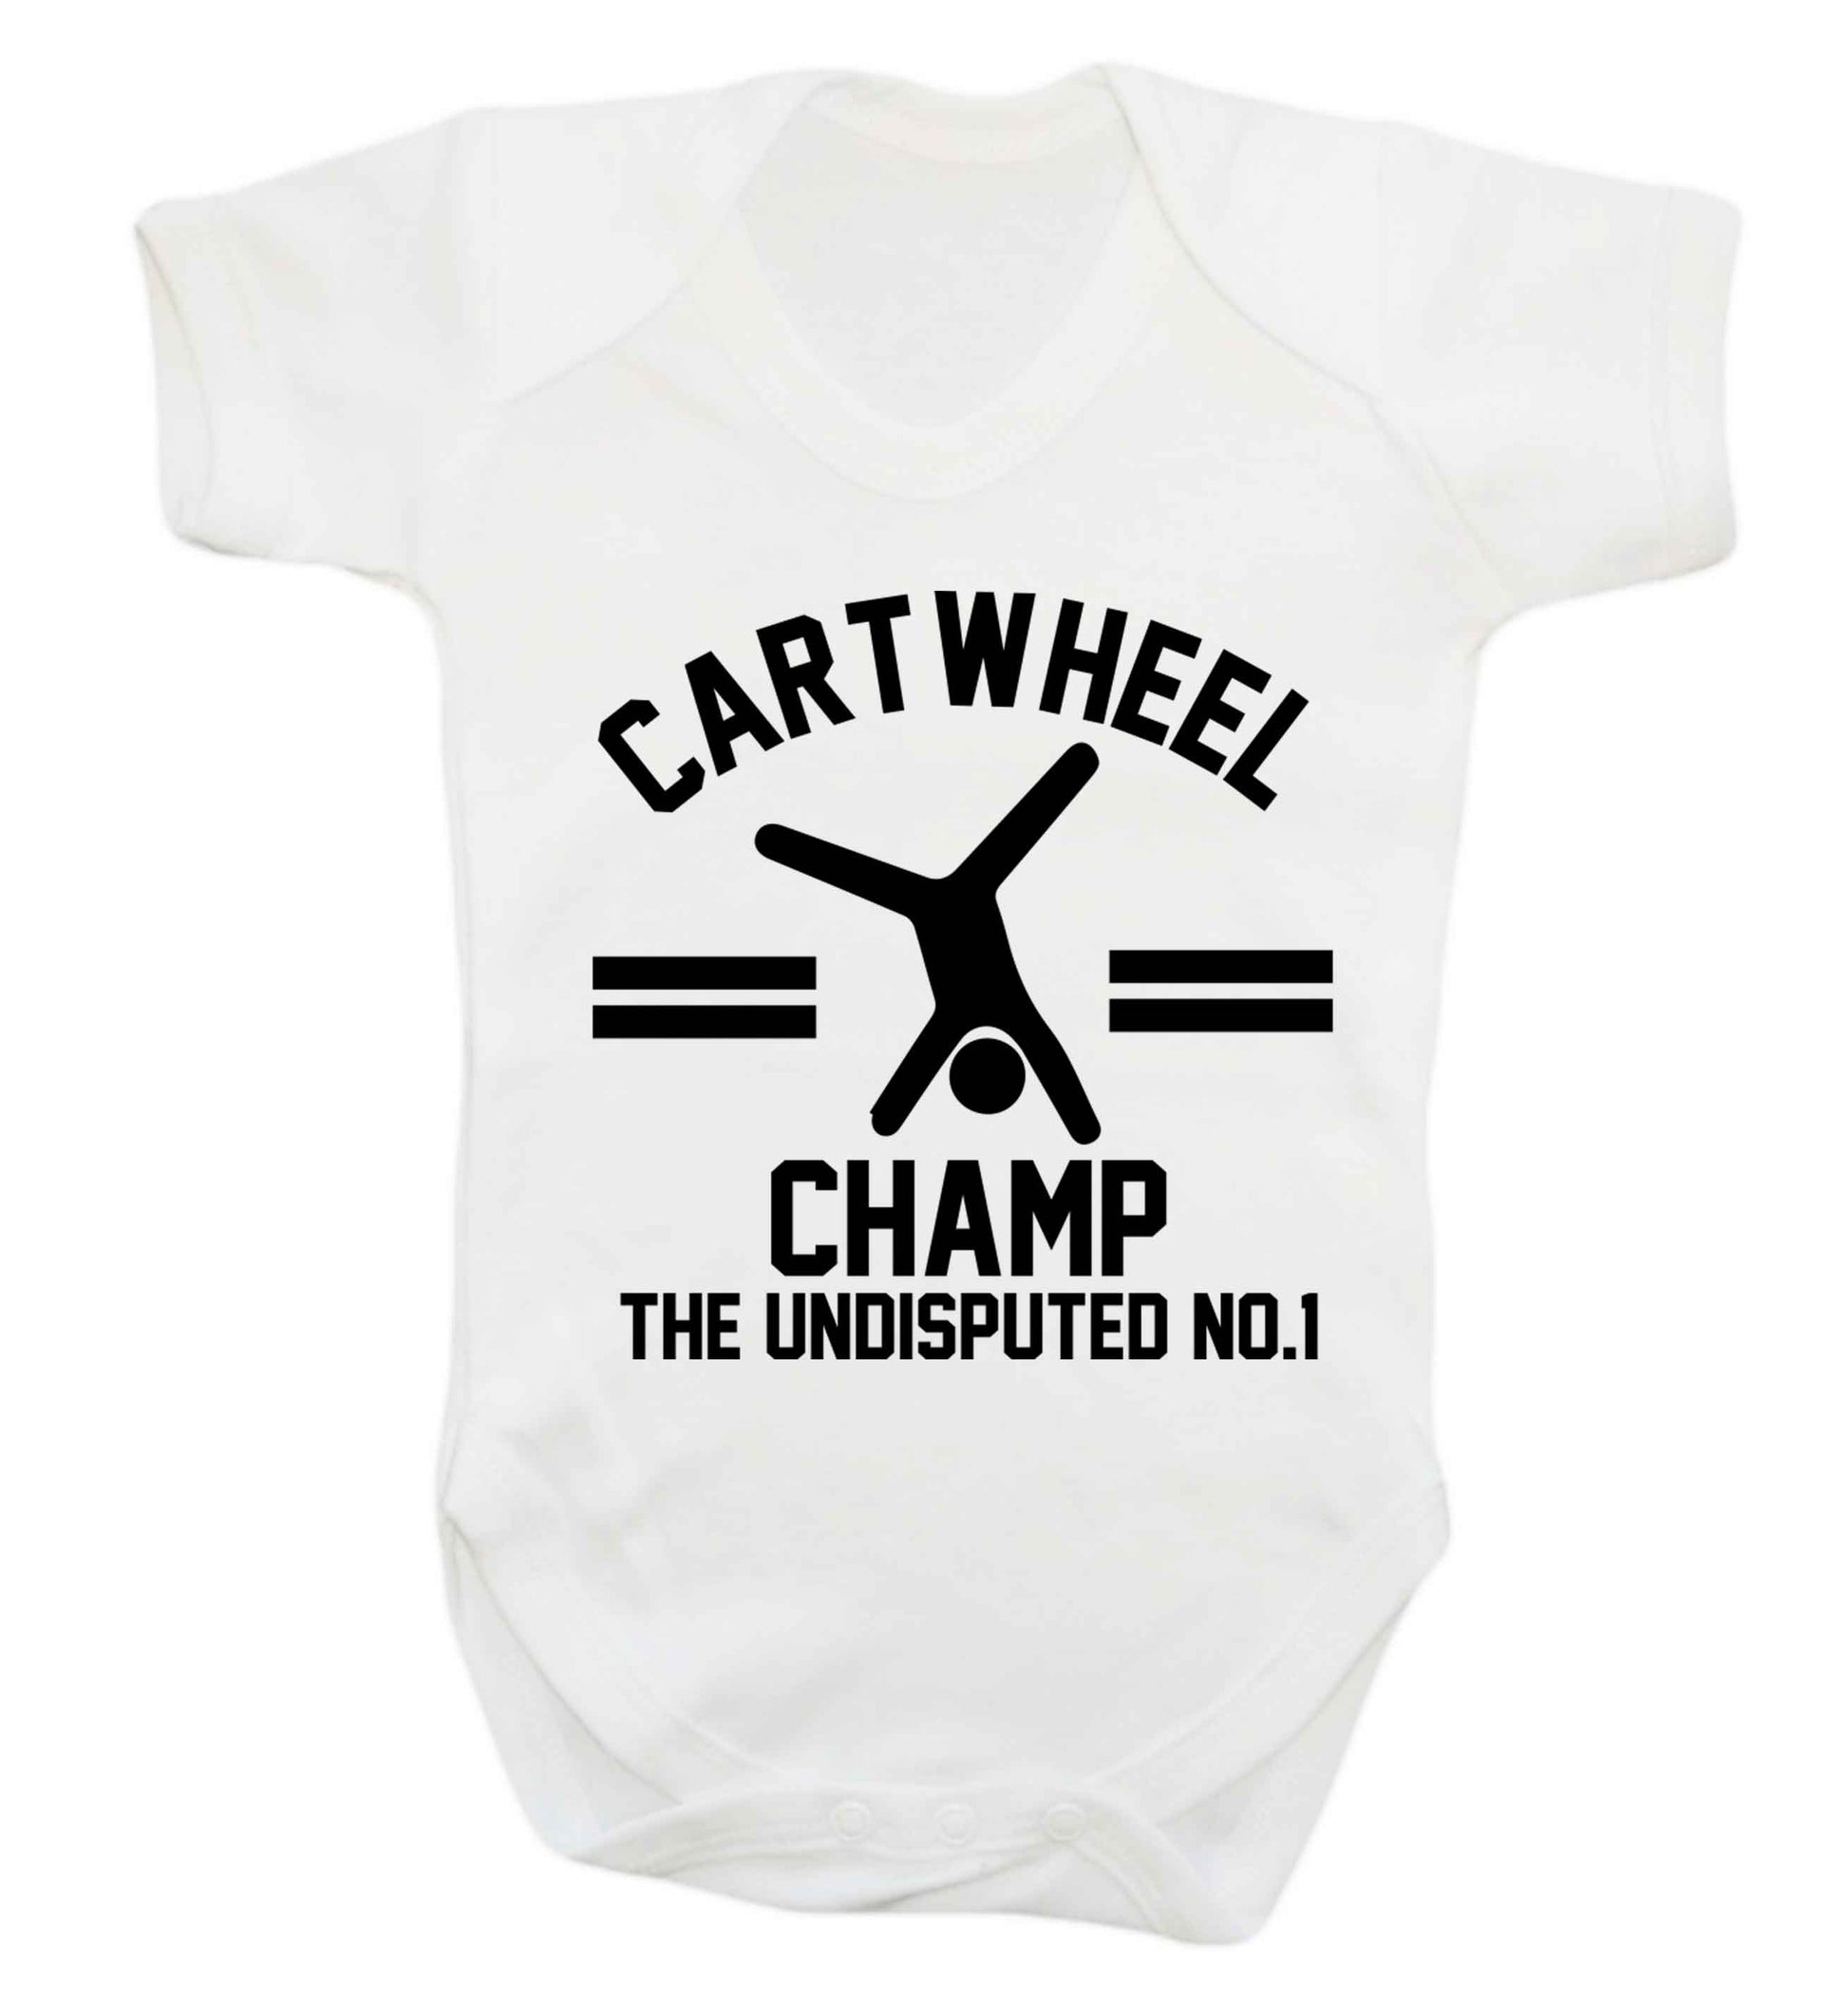 Undisputed cartwheel championship no.1  Baby Vest white 18-24 months